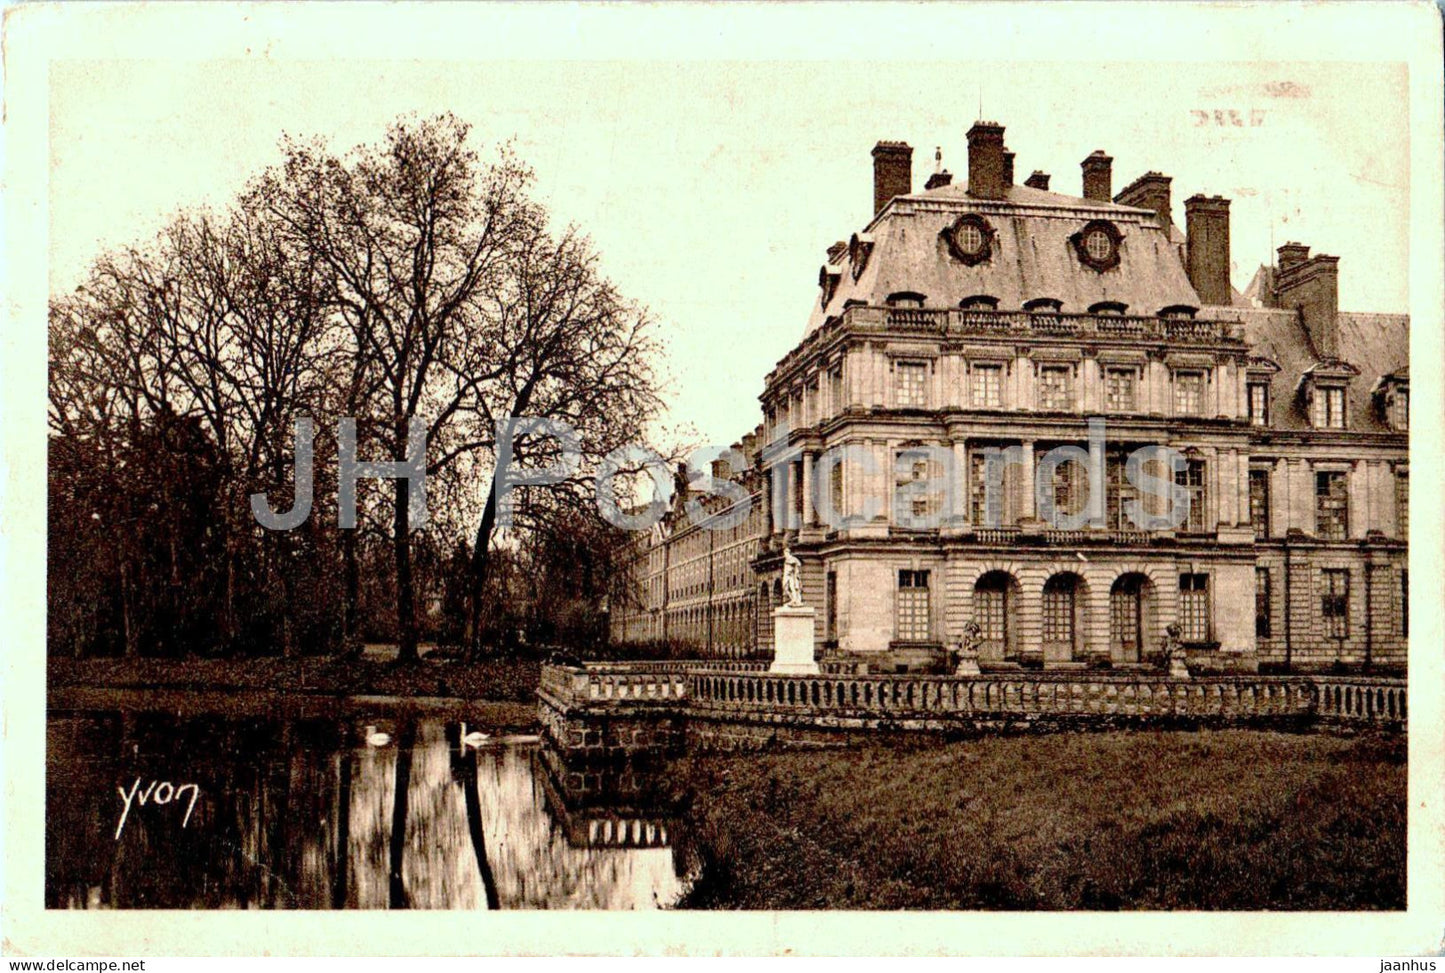 Palais de Fontainebleau - Aile Louis XV - 16 - old postcard - 1930 - France - used - JH Postcards